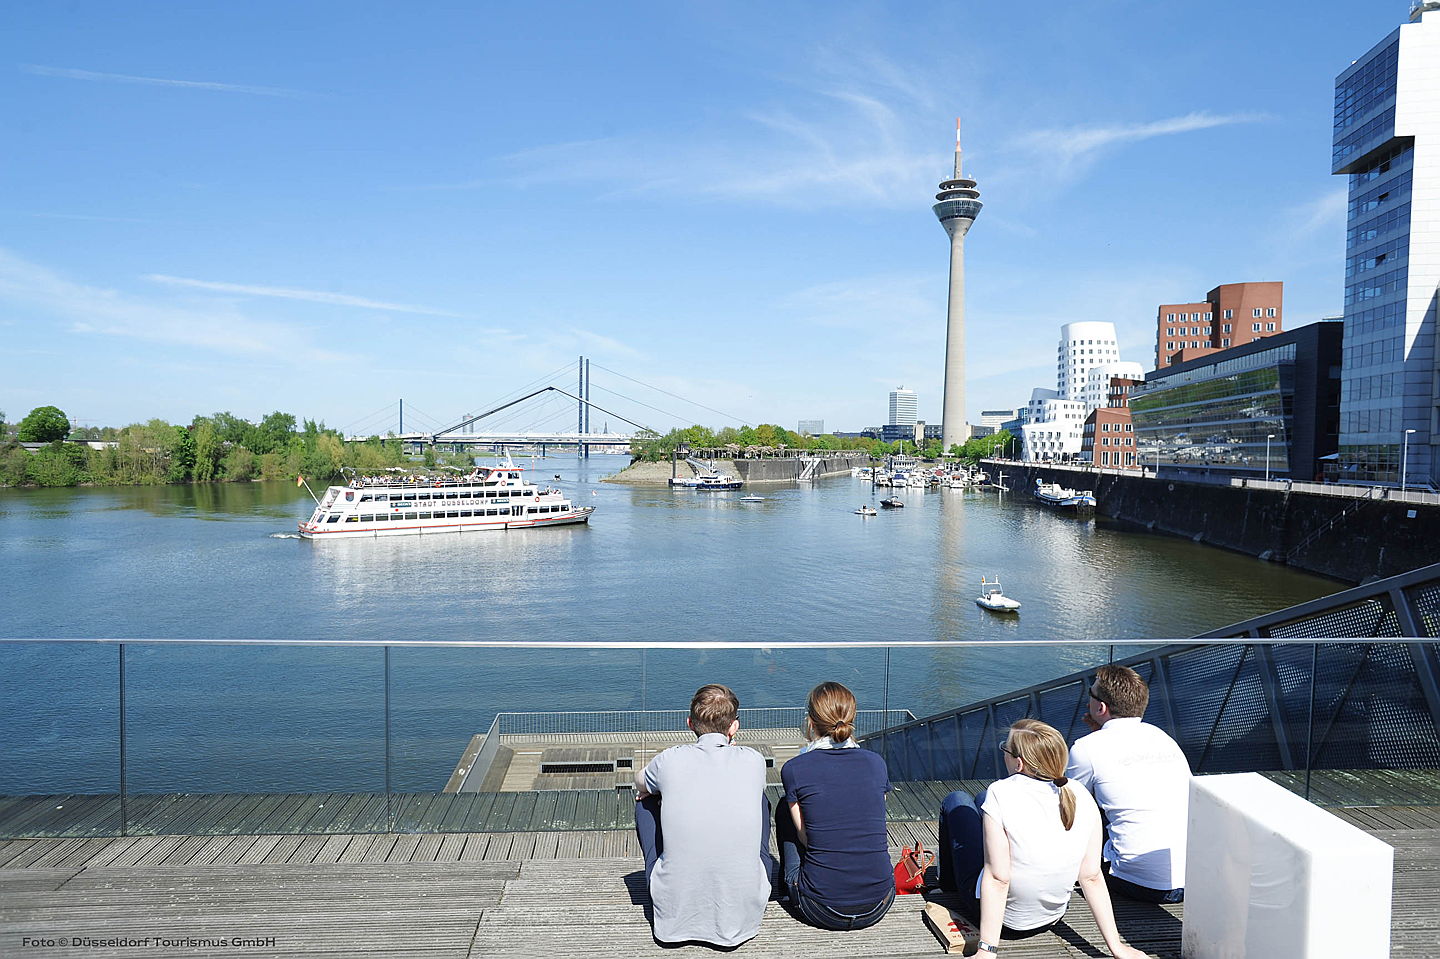  Düsseldorf
- ileadmin_assets_bilder_dmt_bildarchiv_public_Medienhafen_MedienHafen 2.jpg